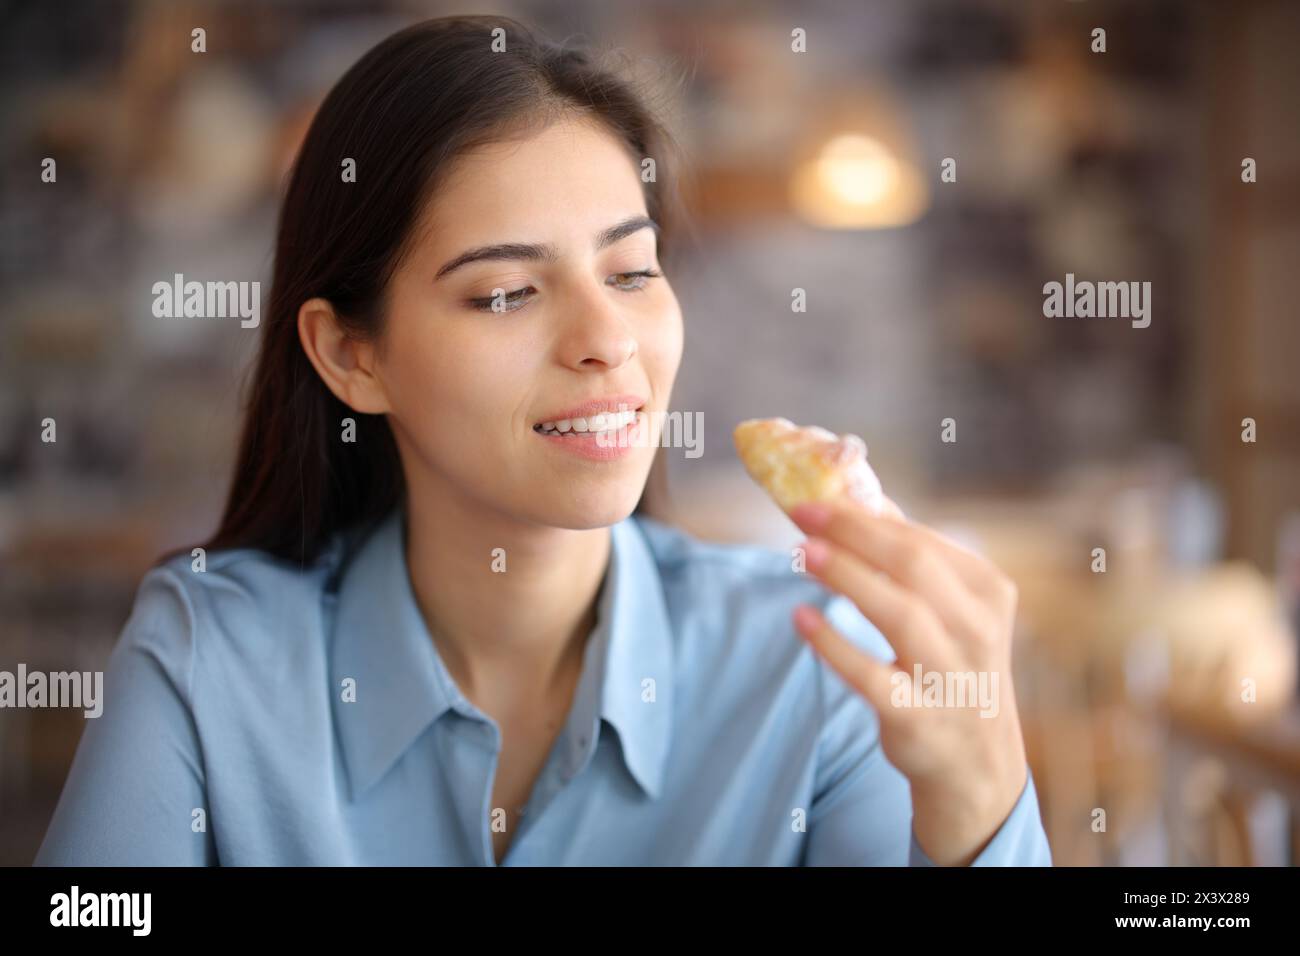 Femme dans un intérieur de restaurant mangeant boulangerie Banque D'Images